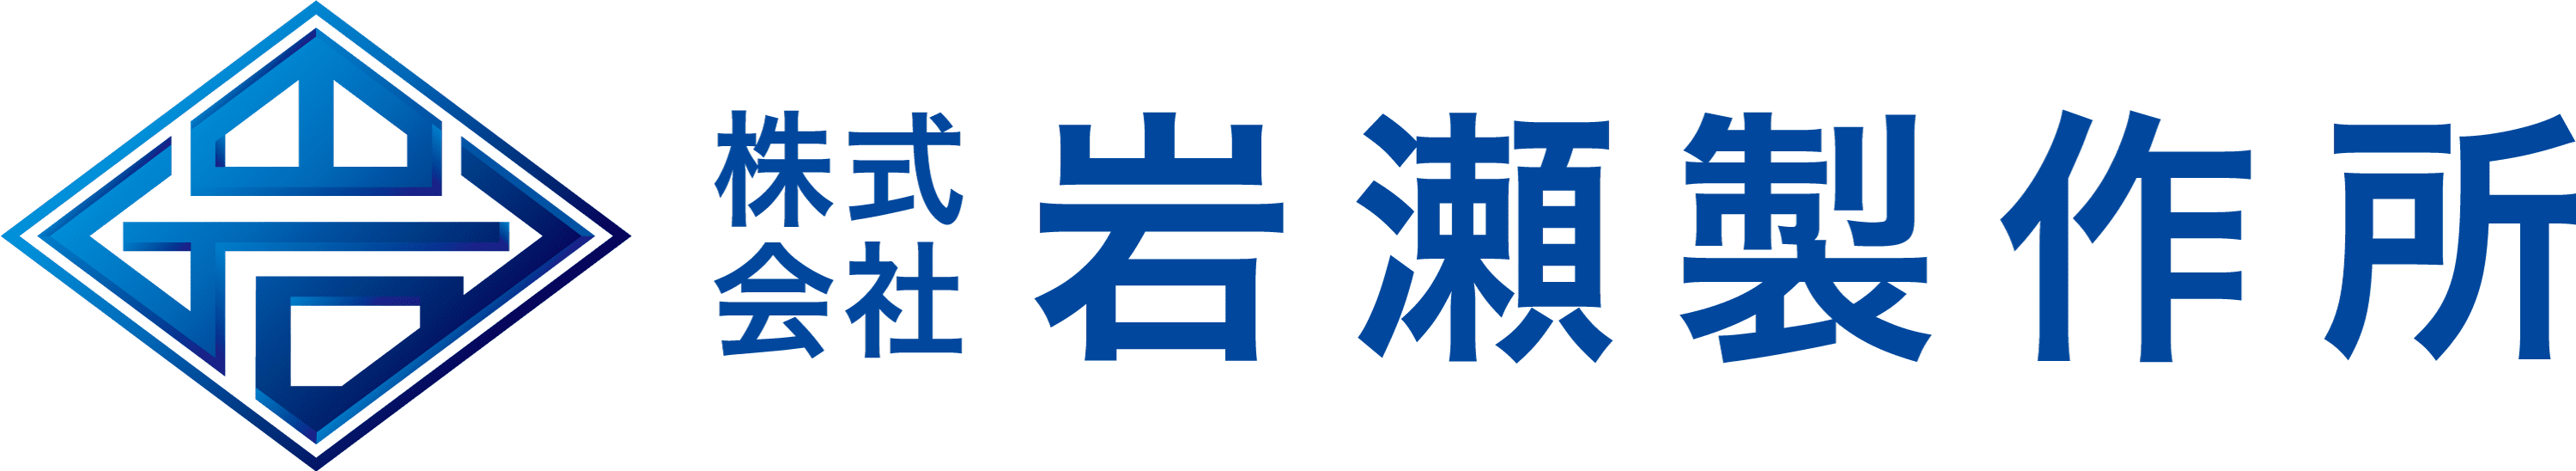 岩瀬製作所_logo